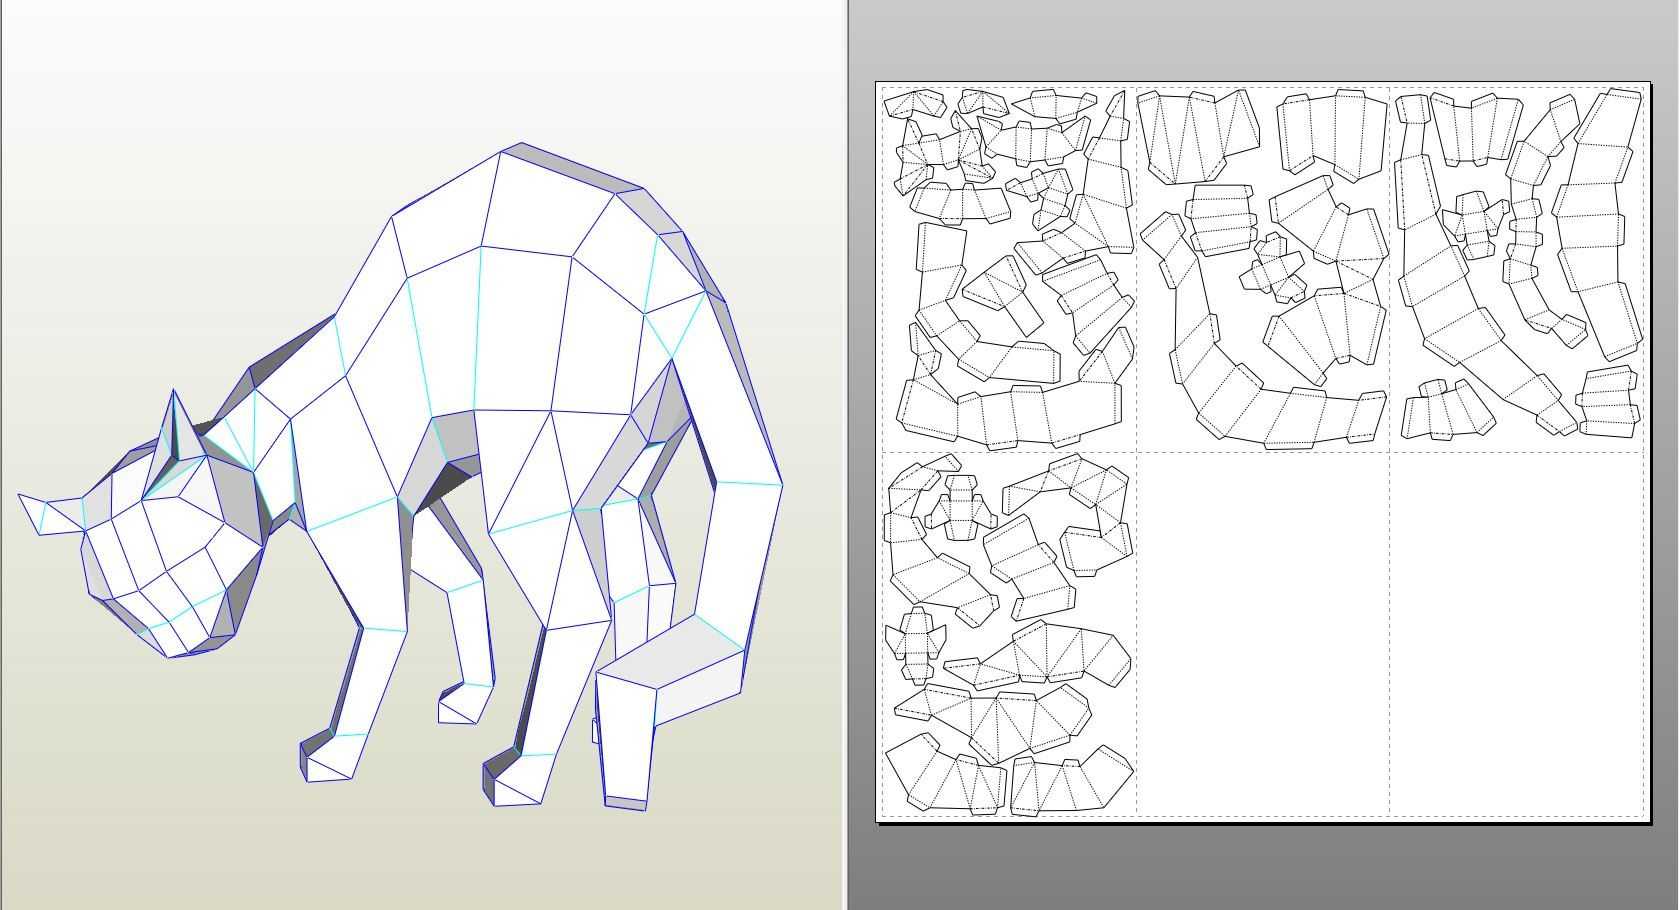 Оригами бык: маска быка на голову из бумаги, распечатать, как сделать модульное оригами - пошаговая схема